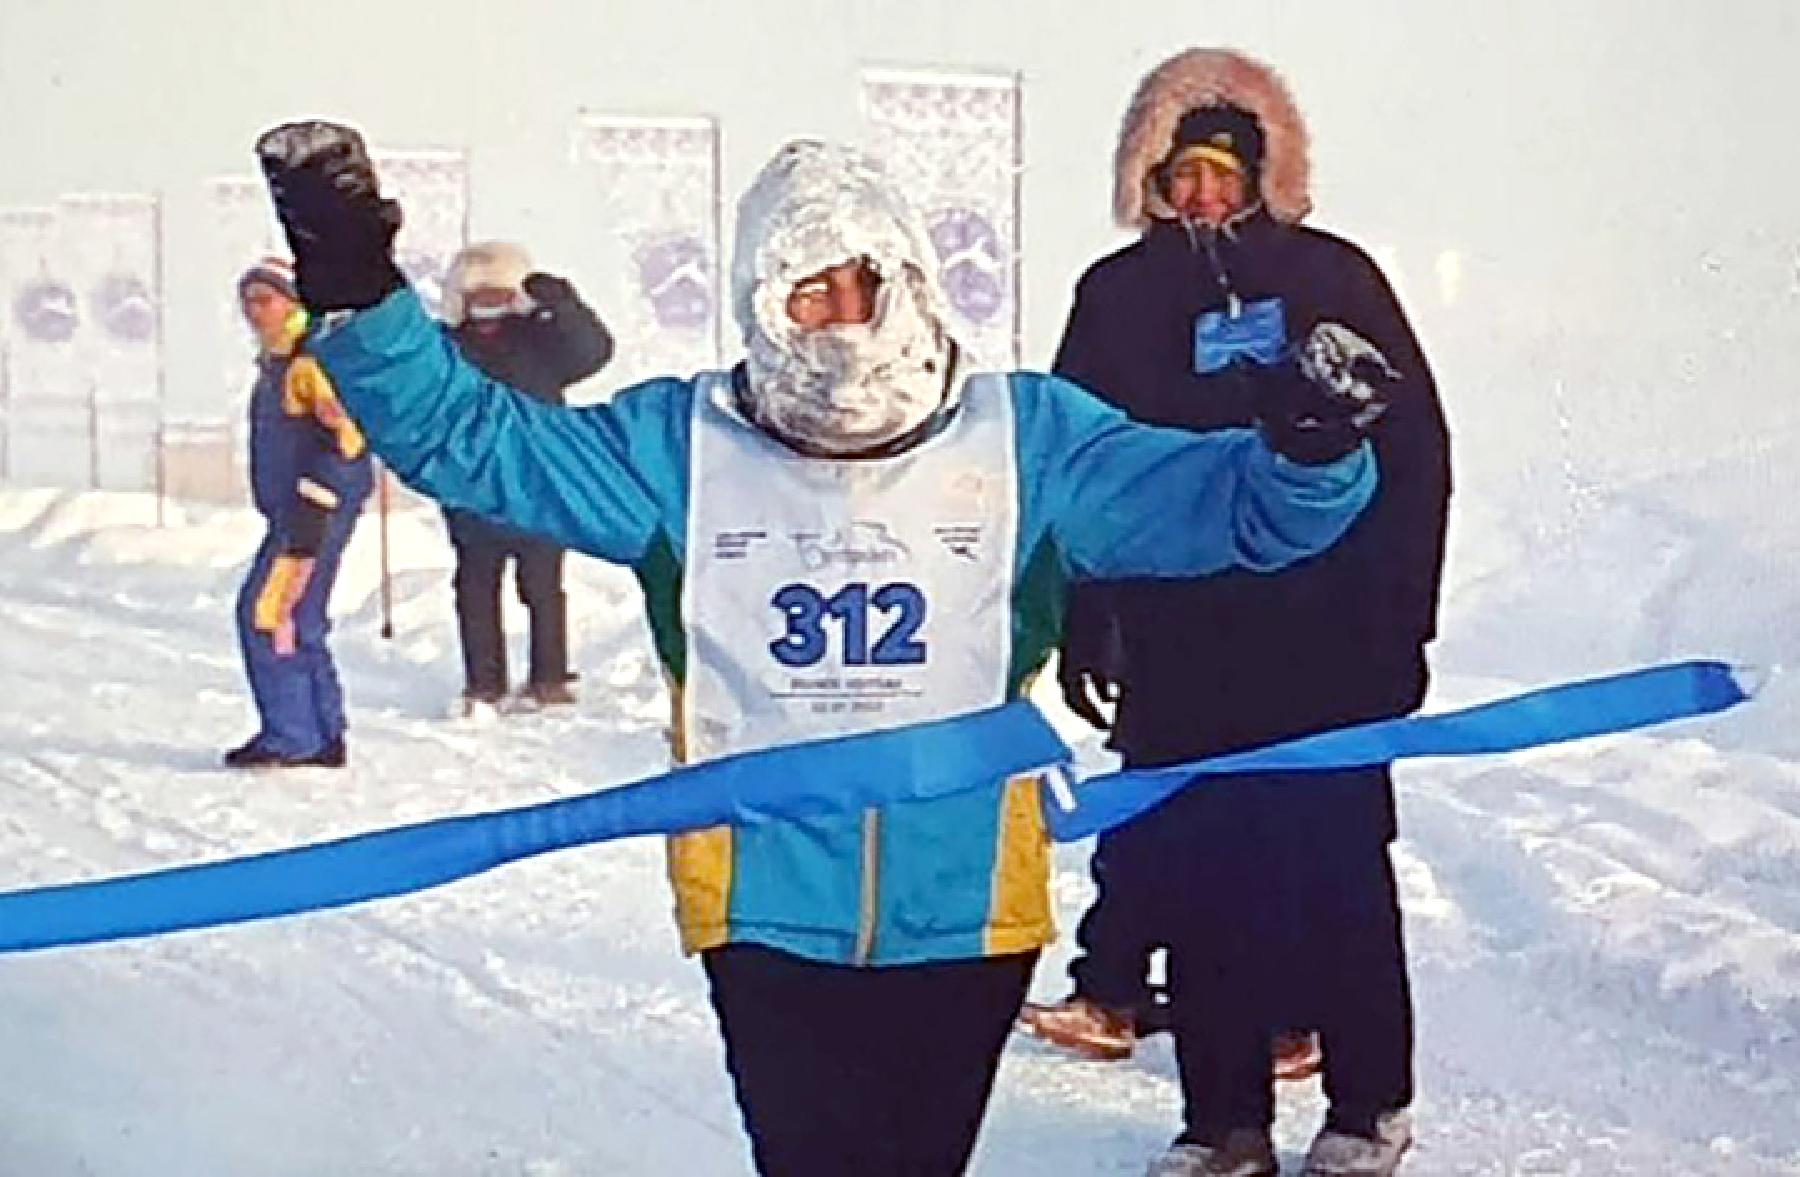 Na Sibiru održan ekstremni maraton pri temperaturi od -50 stepeni